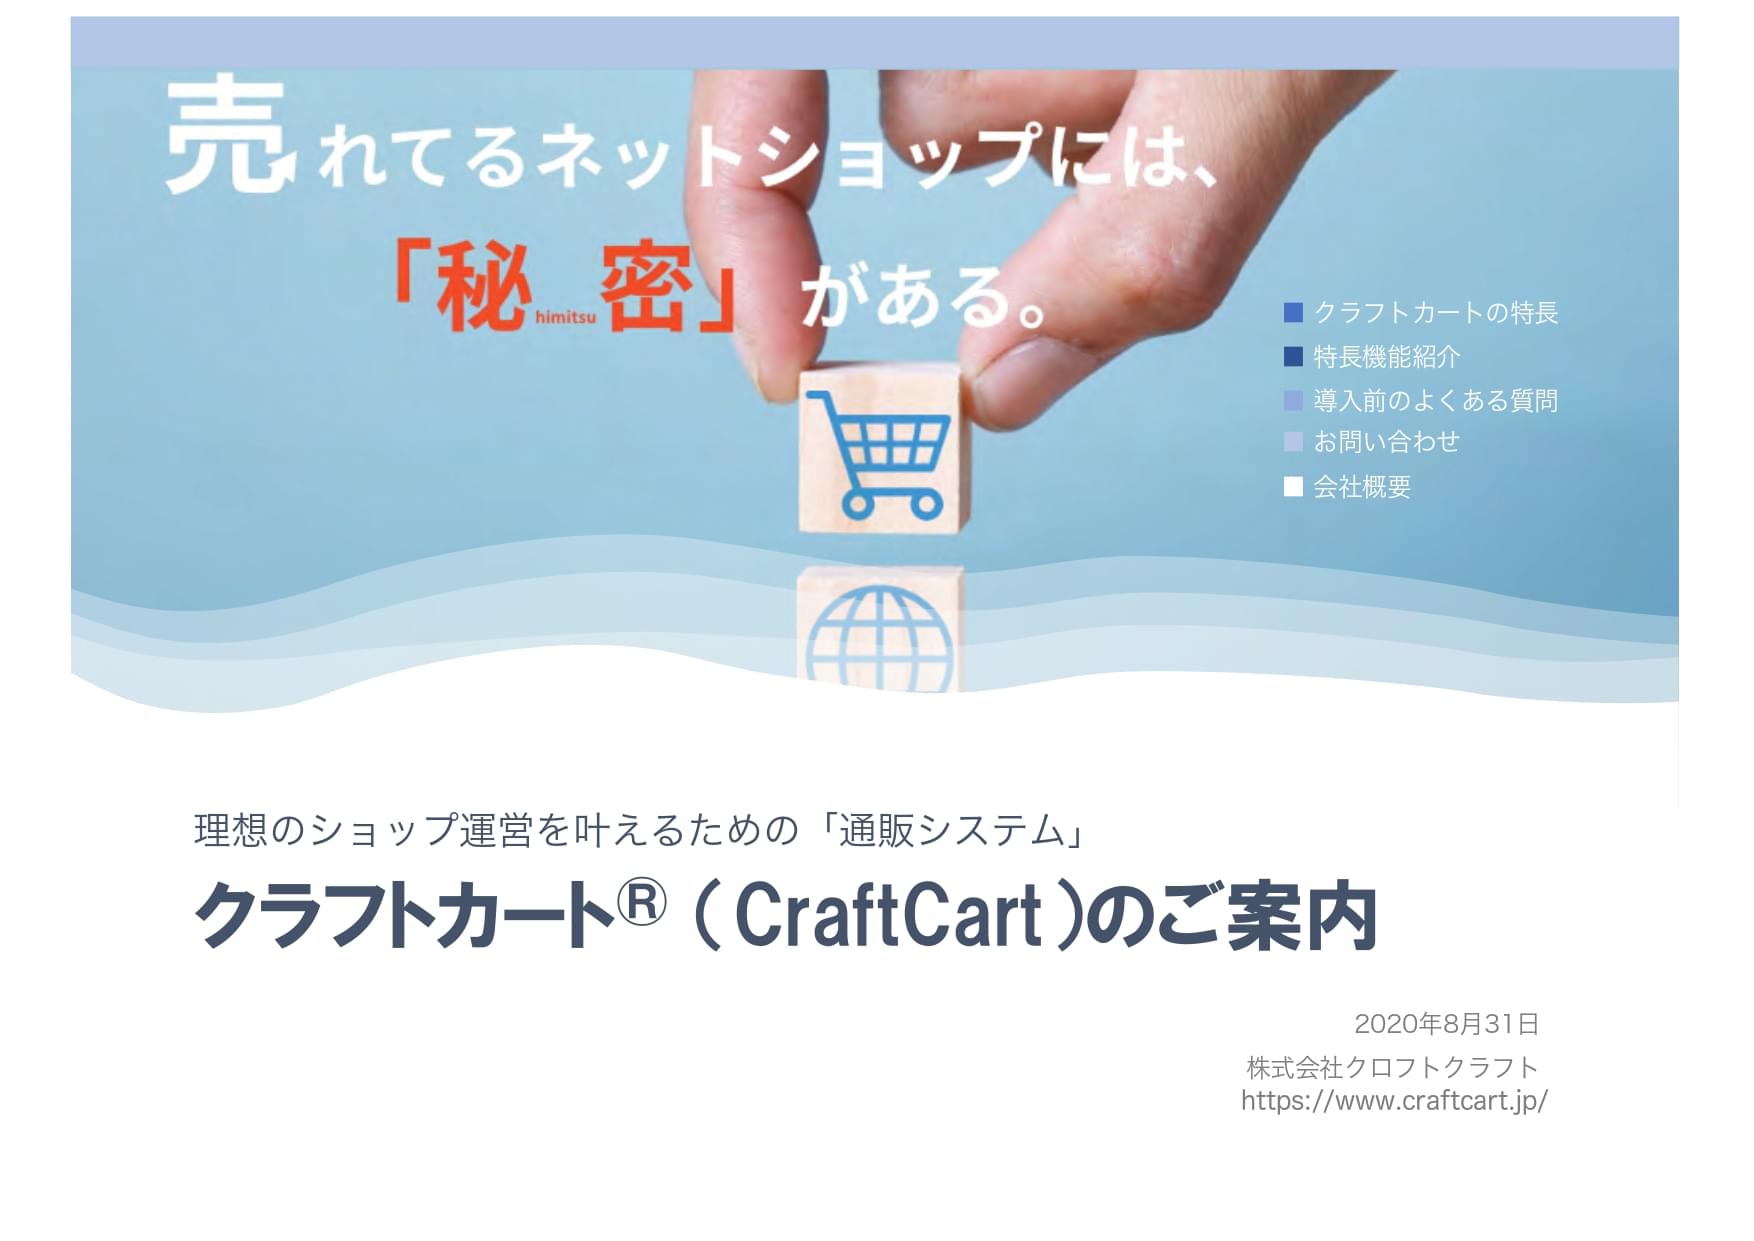 CraftCart